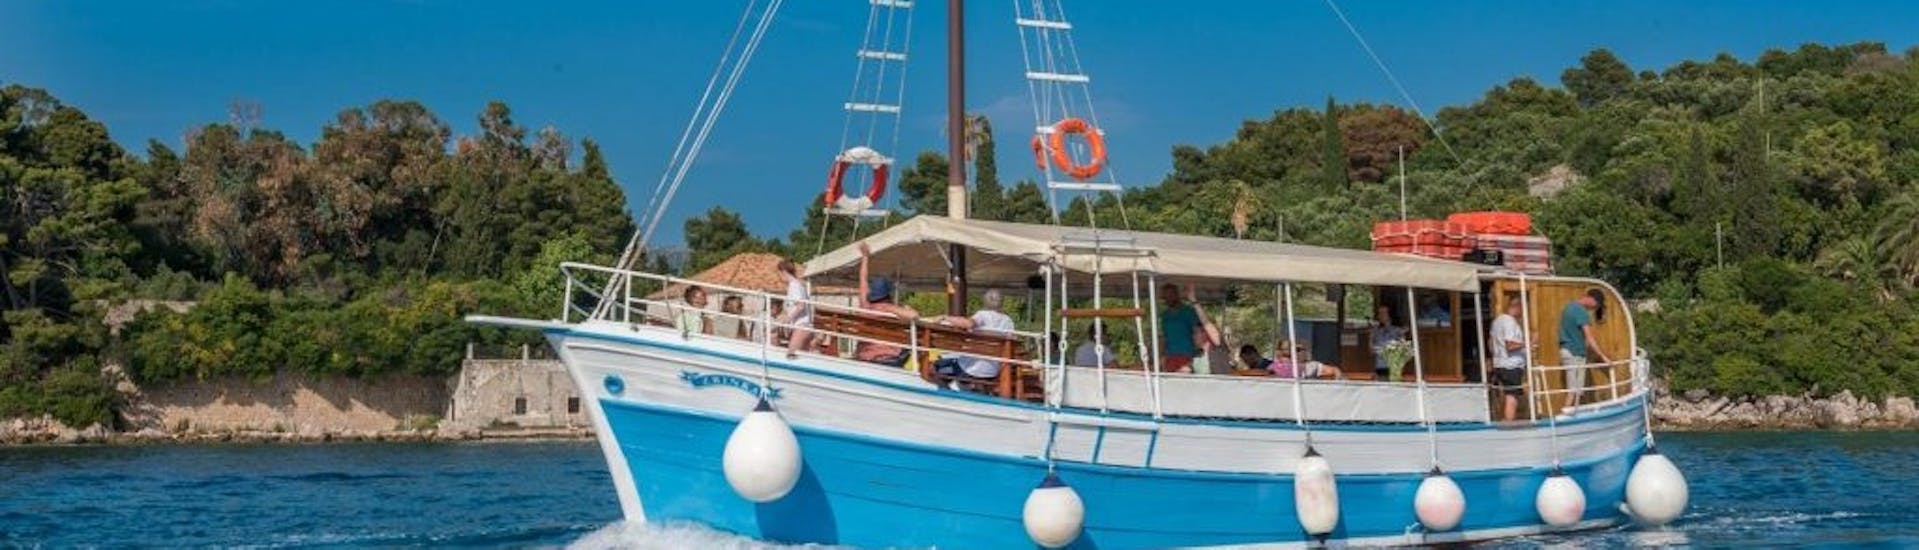 Photo du bateau de Dubrovnik Islands Tours lors de la Balade en bateau de Dubrovnik aux 3 îles avec Déjeuner.